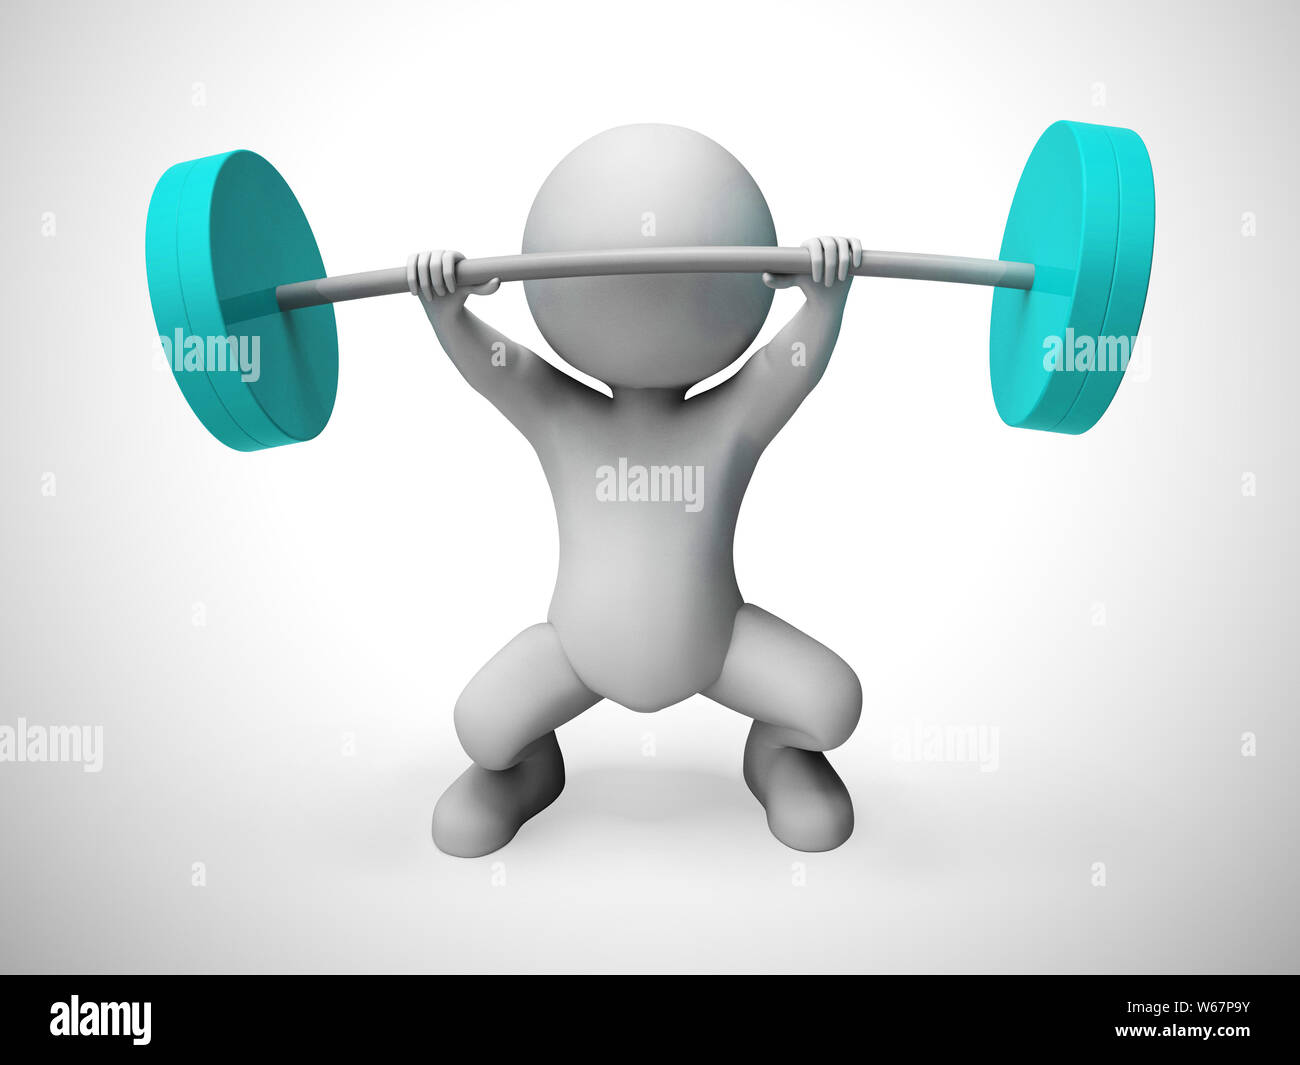 https://c8.alamy.com/compes/w67p9y/el-levantamiento-de-pesas-en-el-gimnasio-practicar-ejercicio-y-un-robusto-cuerpo-poderosos-ejercicios-fisicos-energicos-ilustracion-3d-w67p9y.jpg